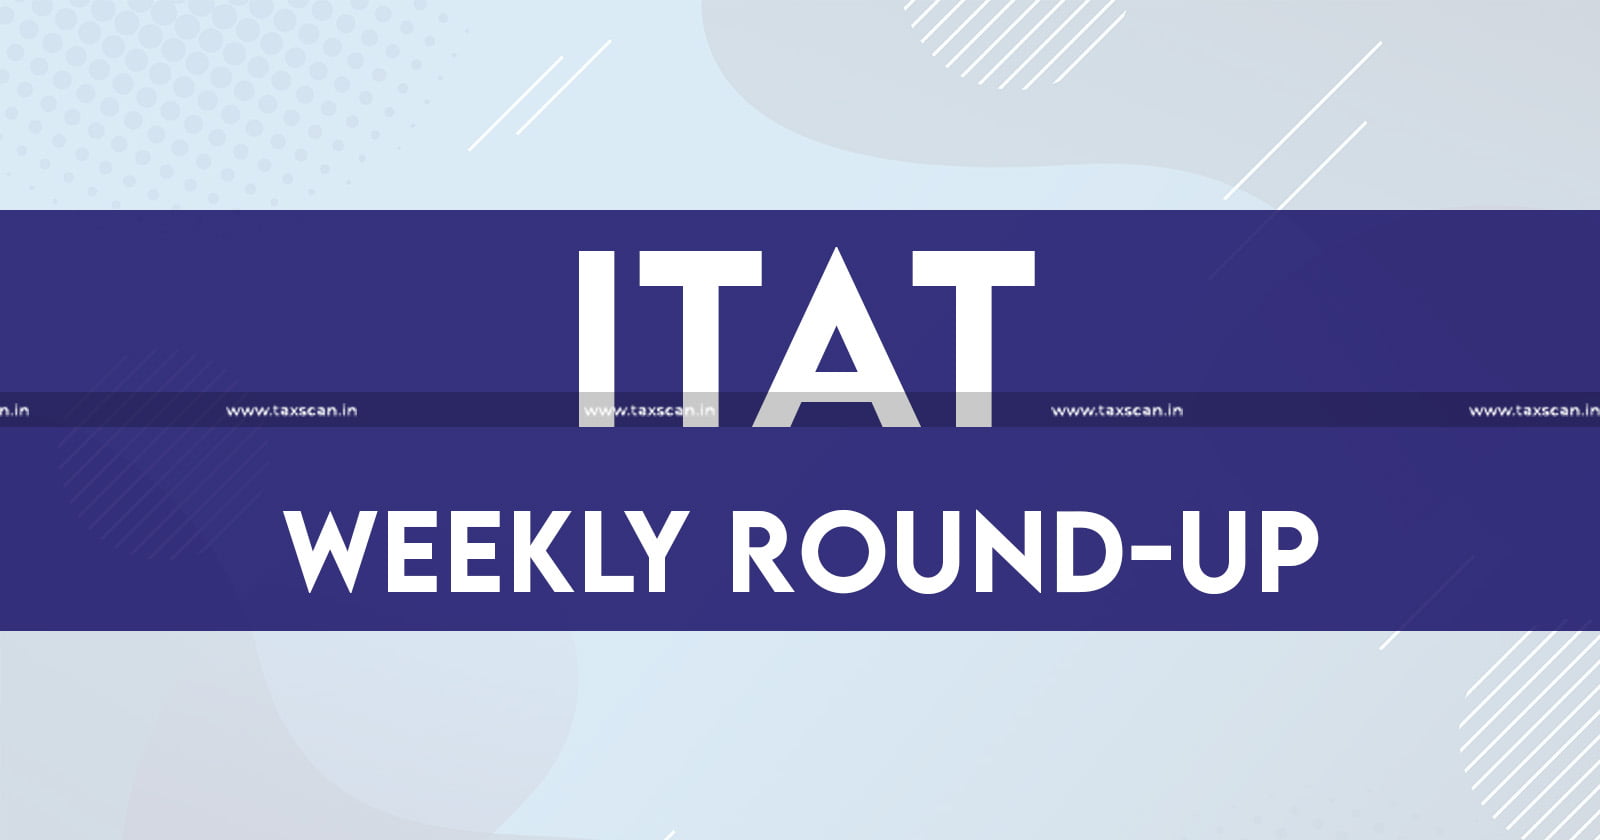 ITAT - Income tax - Income tax news - Tax tribunal updates - ITAT analysis - taxscan